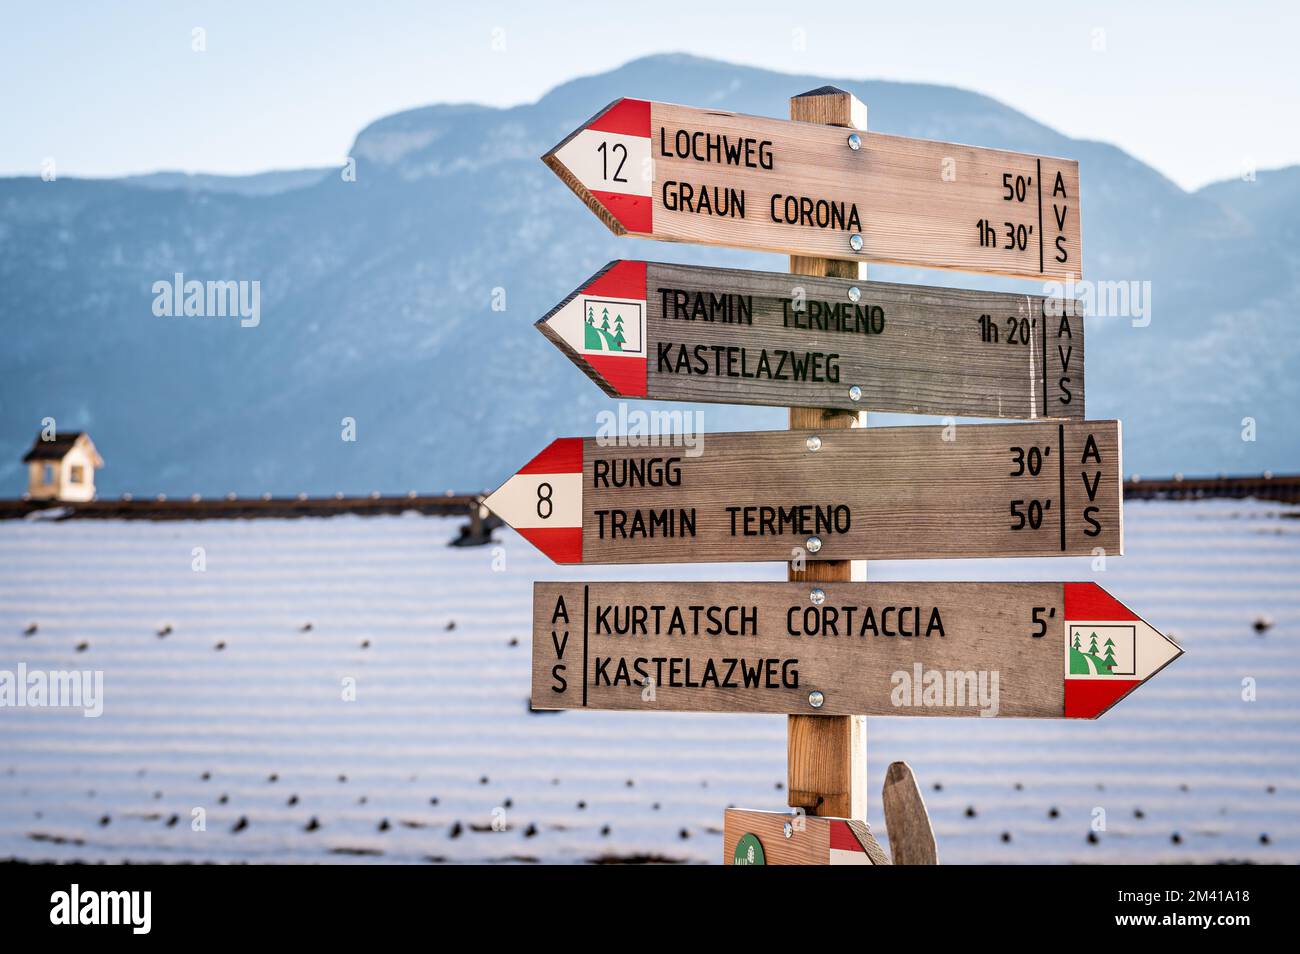 Panneau en bois indiquant les sentiers publics dans le village de Cortaccia sur la route des vins, Tyrol du Sud - Trentin-Haut-Adige, nord de l'Italie. Banque D'Images